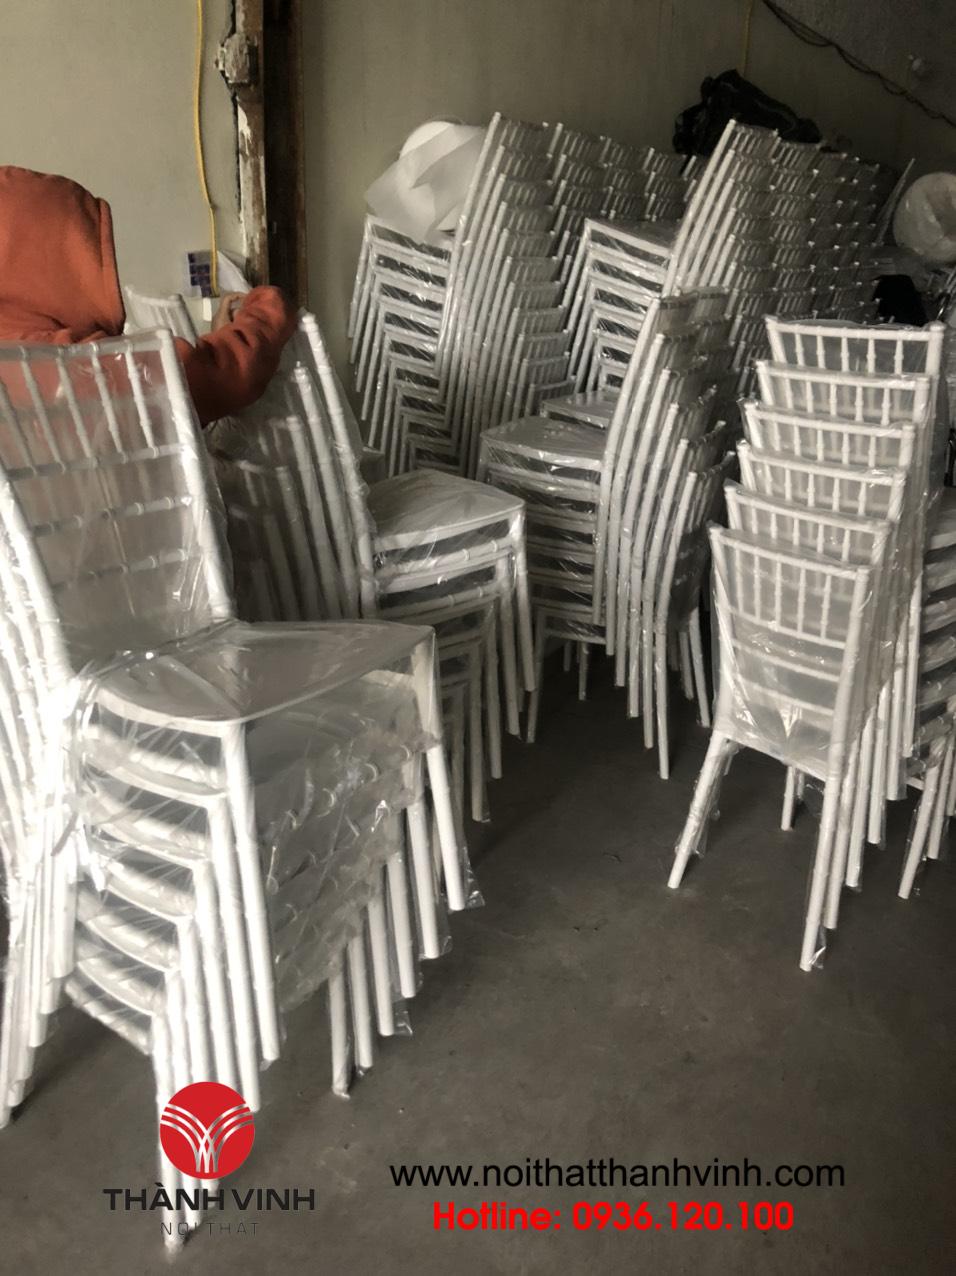 Nội thất Thành Vinh cung cấp ghế chiavari tiffany nhựa với giá thành hợp lý